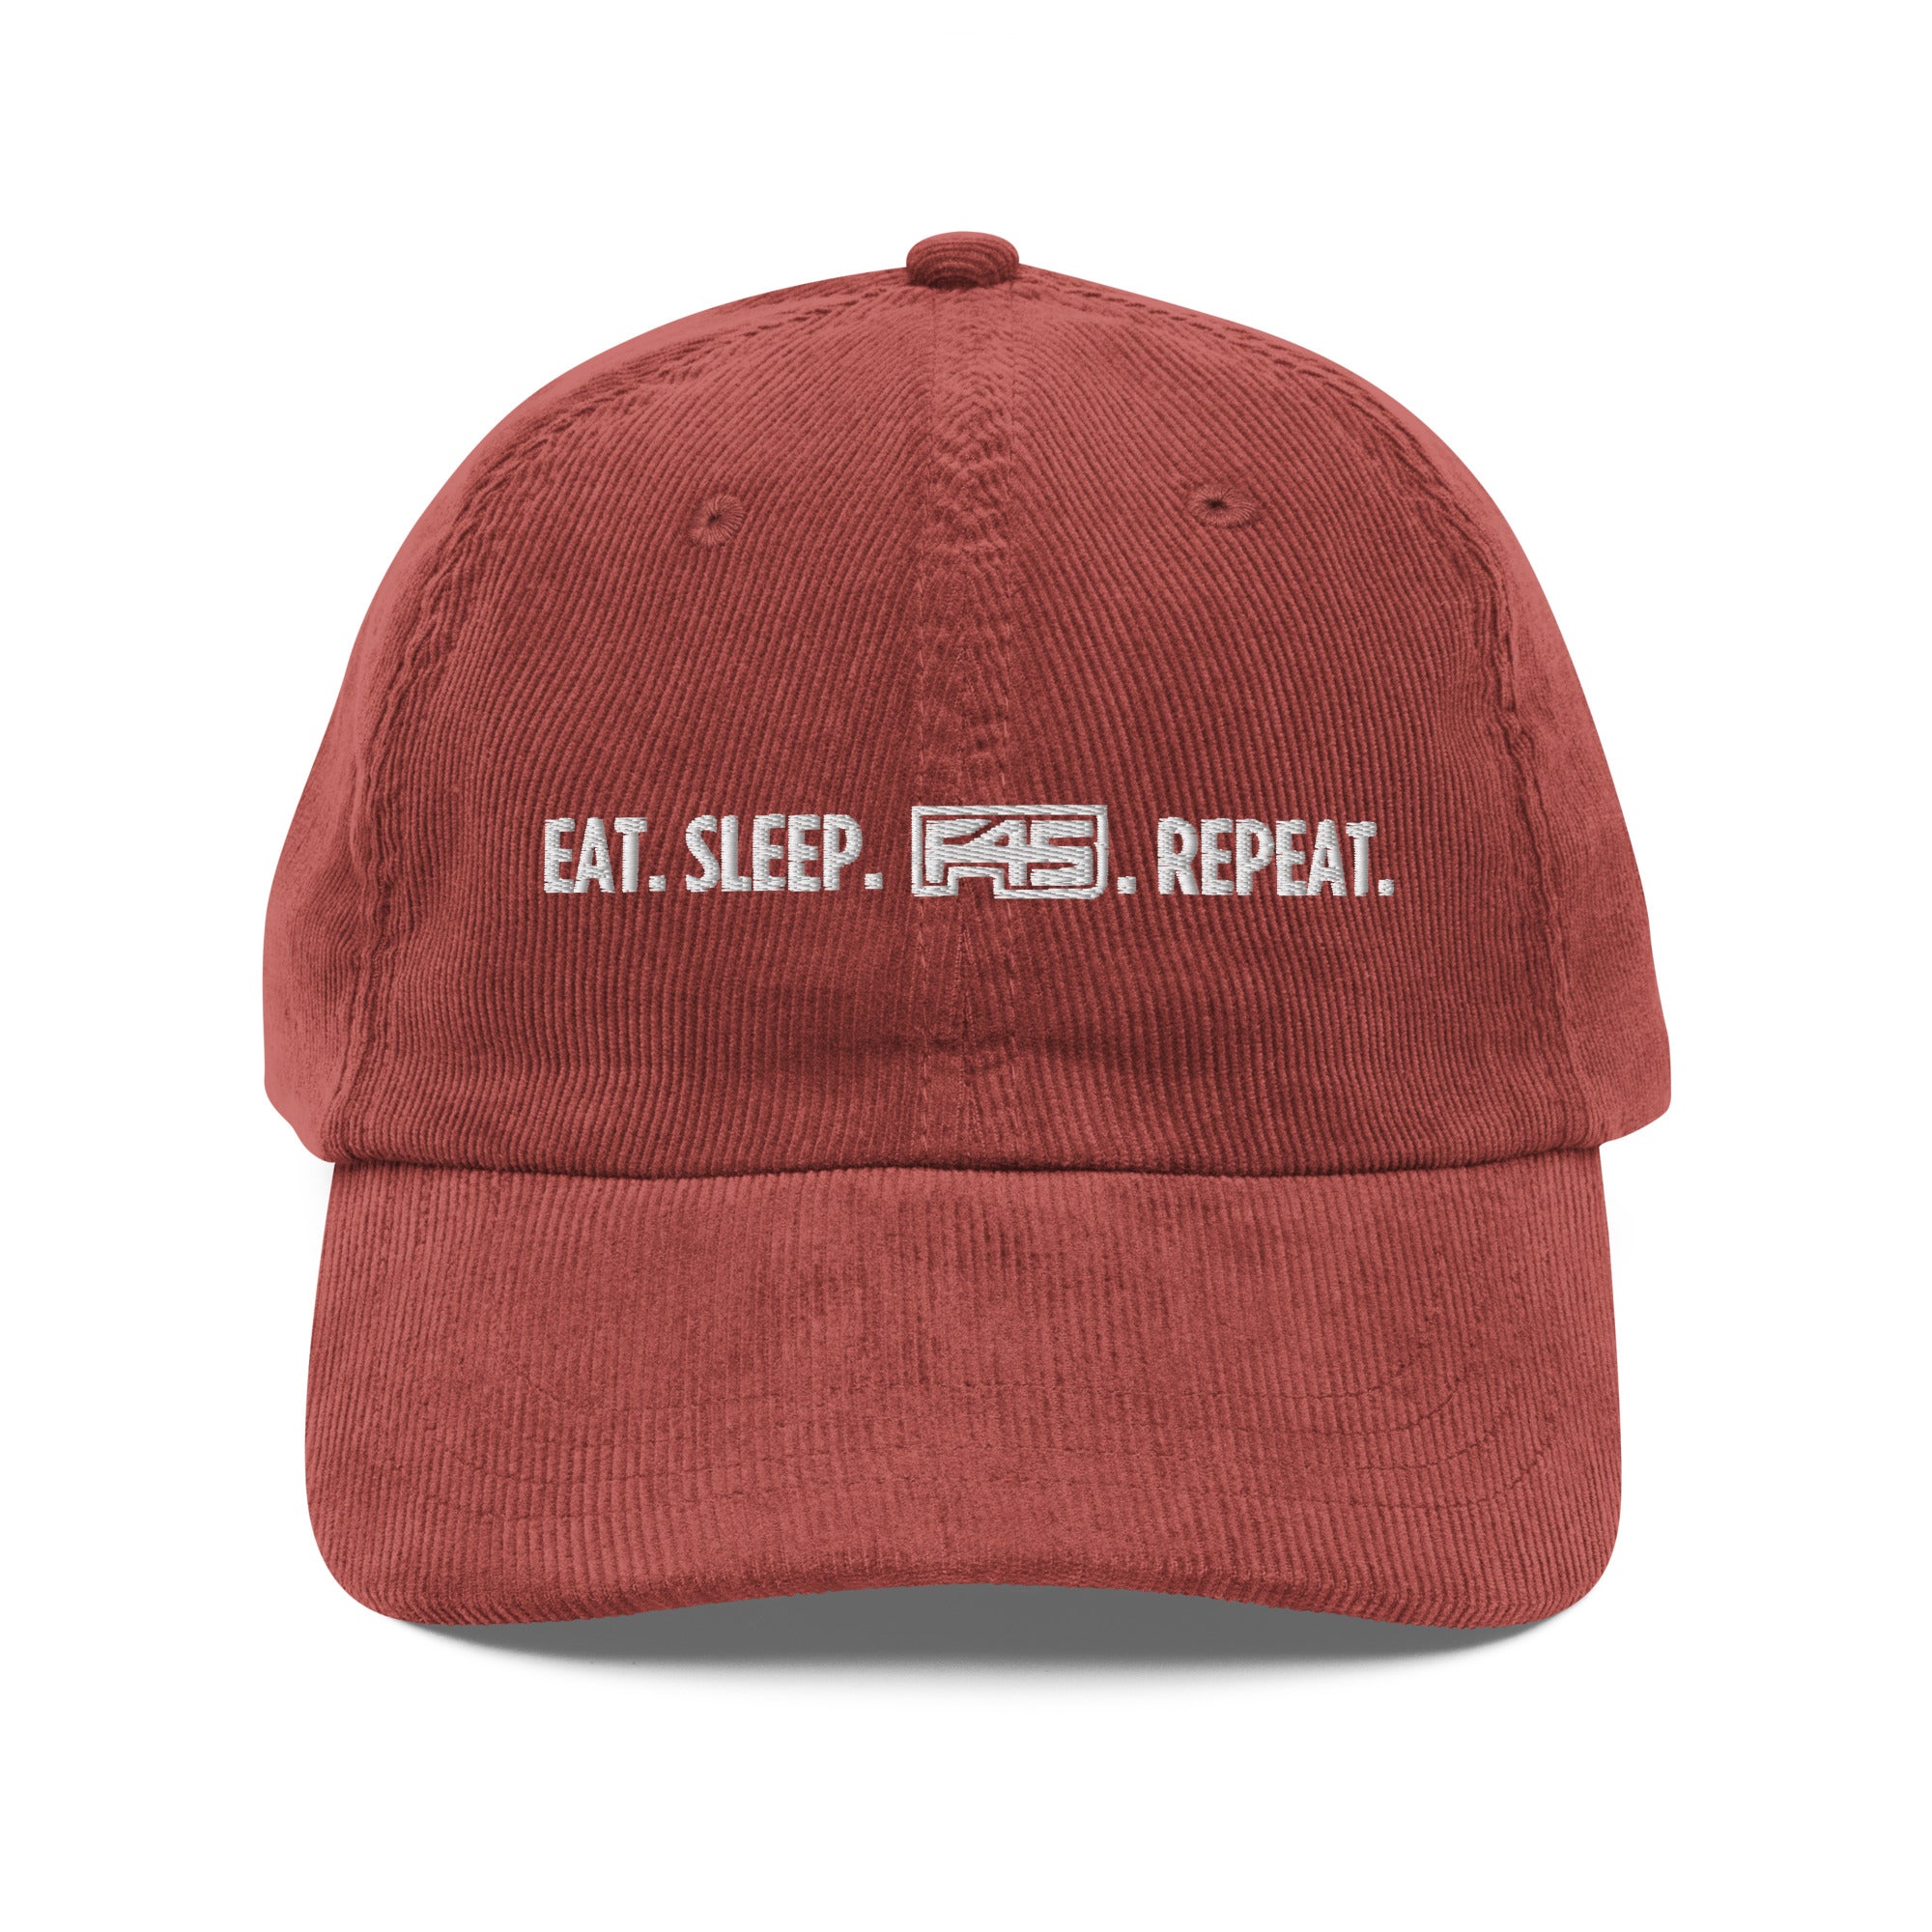 F45 Eat, Sleep, F45, Repeat Vintage Corduroy Hat